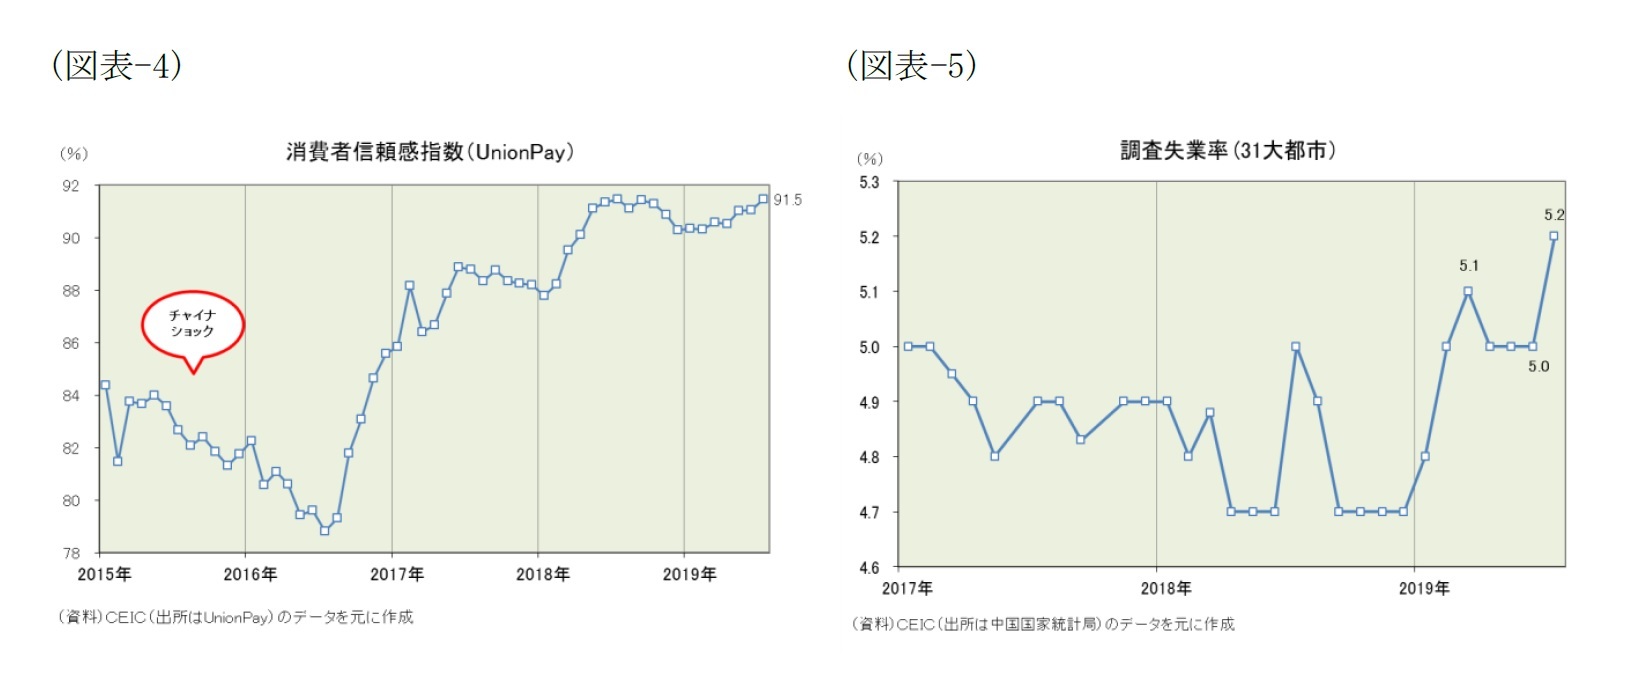 （図表-4）消費者信頼感指数(UnionPay)/（図表-5）調査失業率(31f大都市)